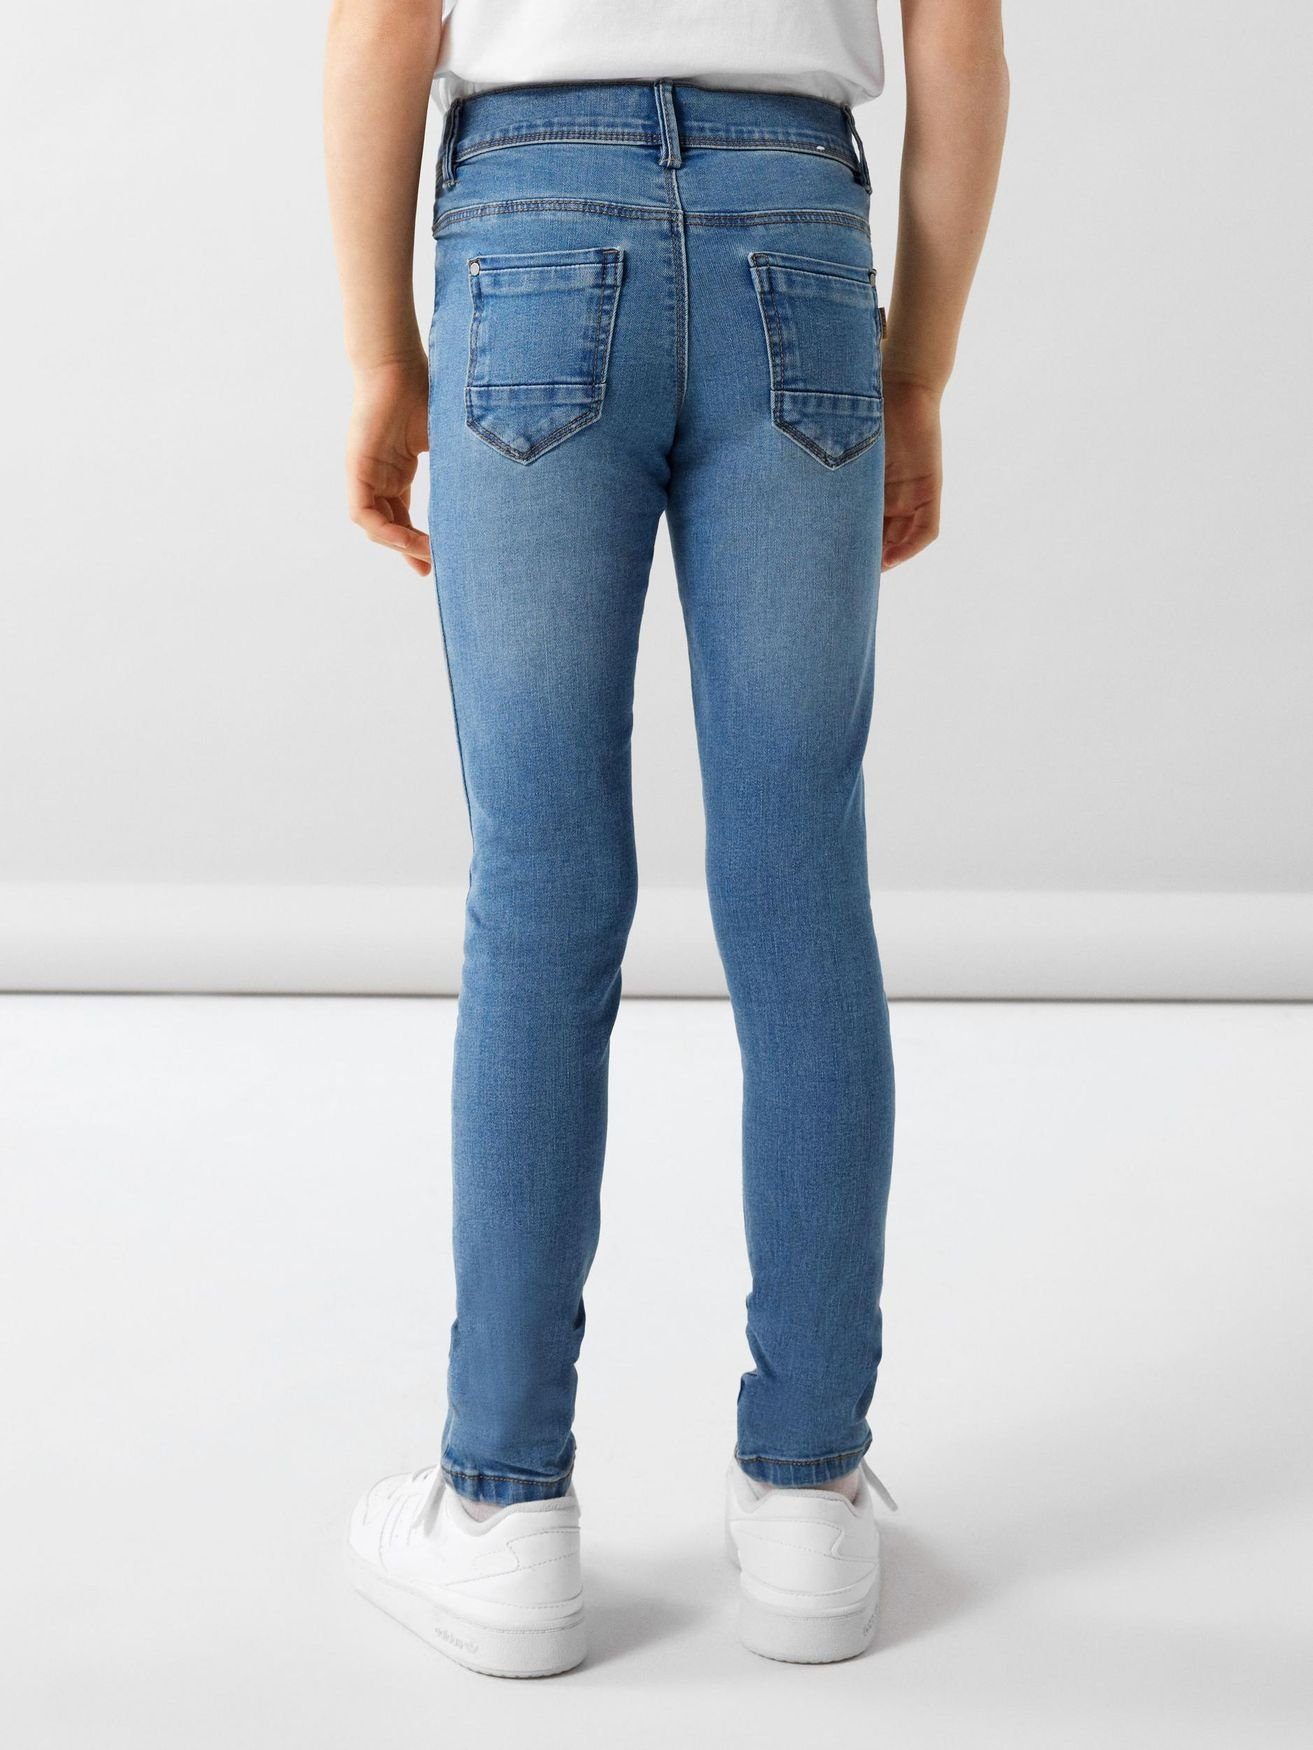 It Denim Regular-fit-Jeans Skinny Hellblau in Name NKFPOLLY Jeans Hose 5546